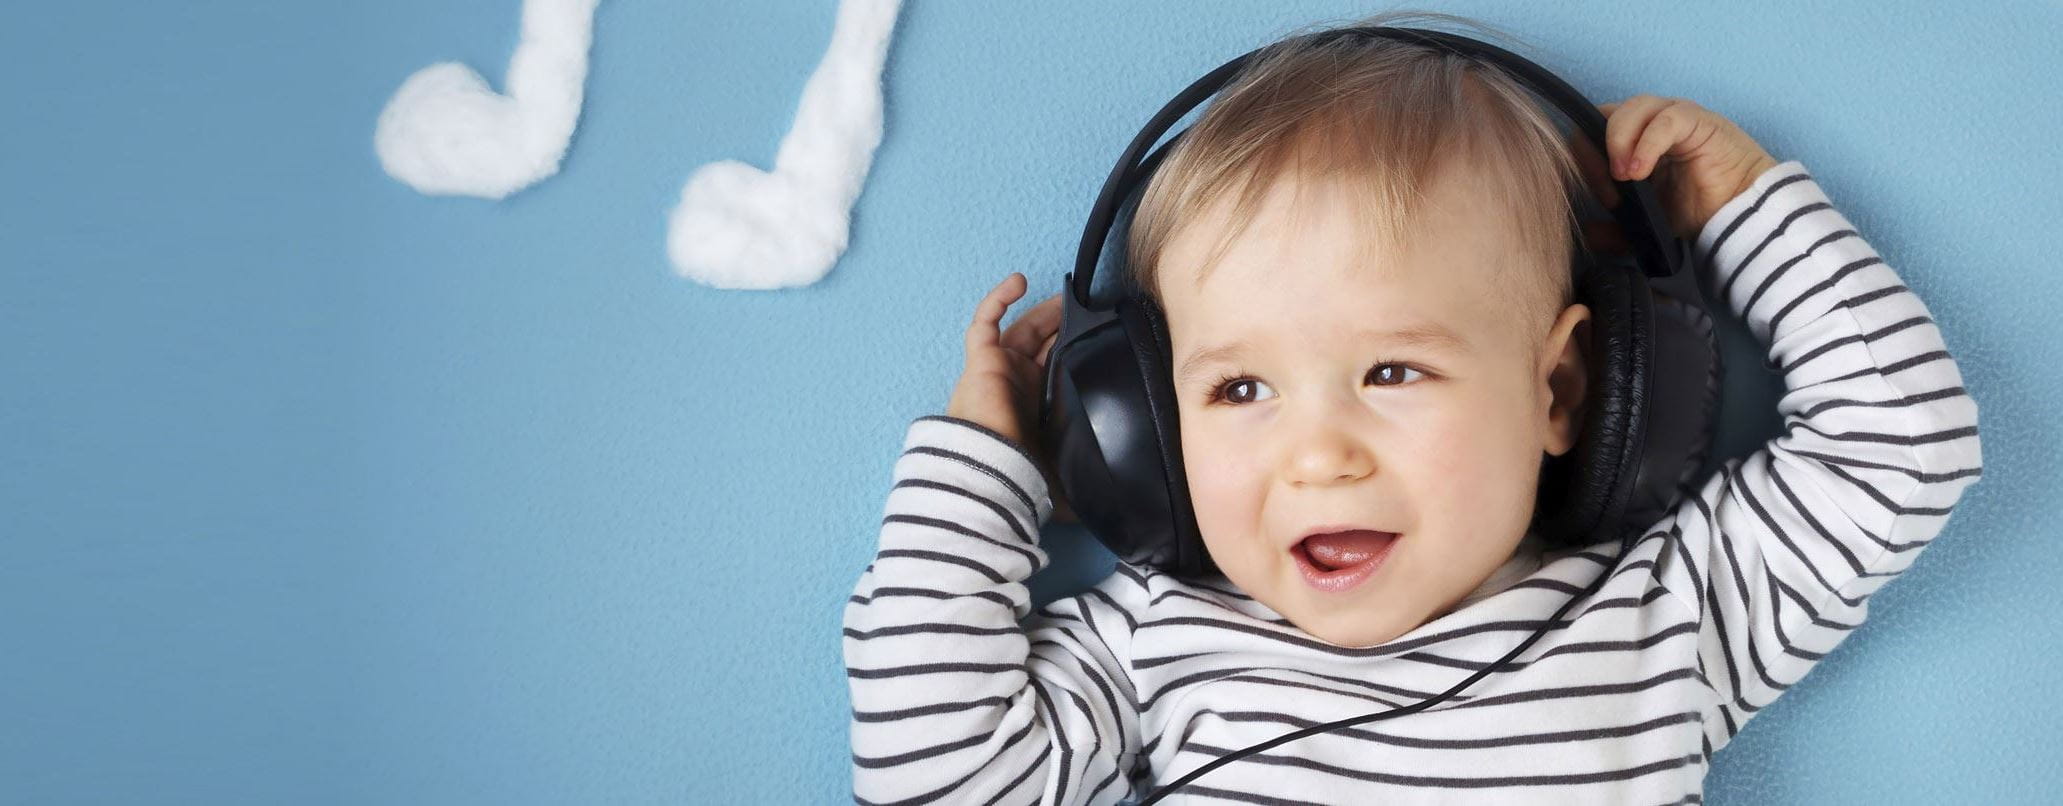 Apaiser les bébés avec de la musique – NIVEA - NIVEA Suisse